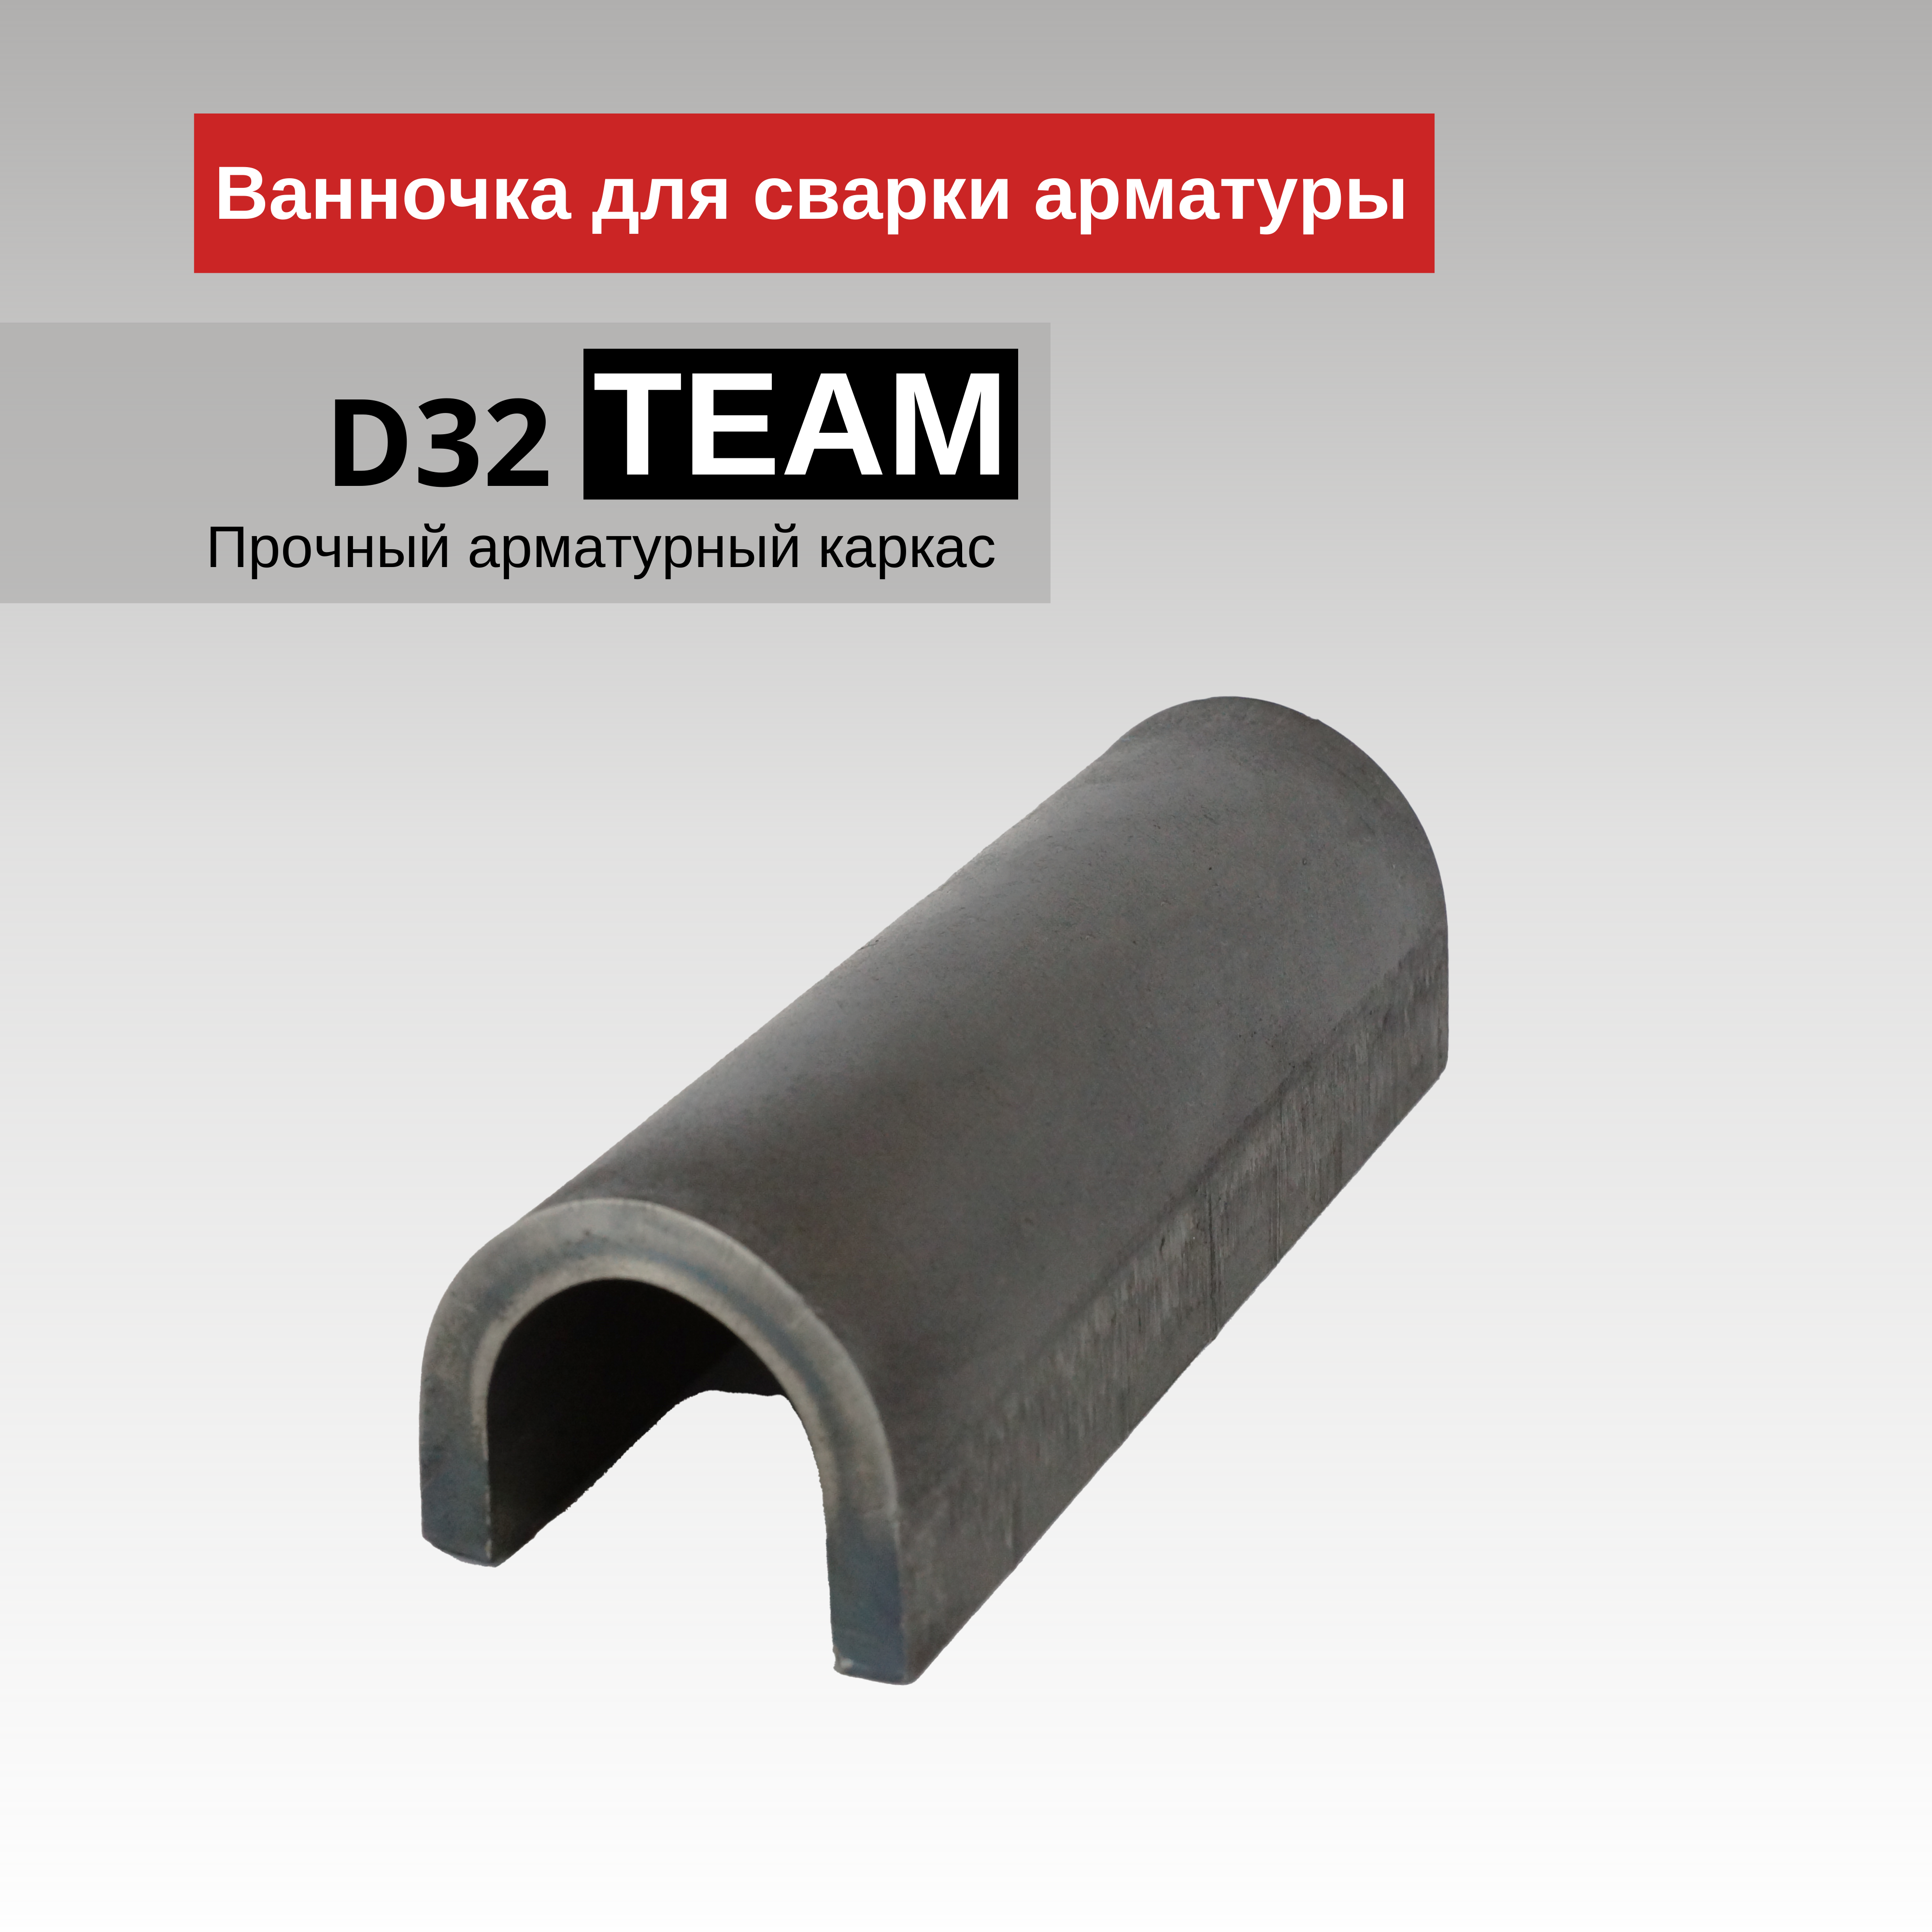 Ванночка для сварки арматуры Промышленник D32 скоба-накладка упаковка 10 шт. - фотография № 1